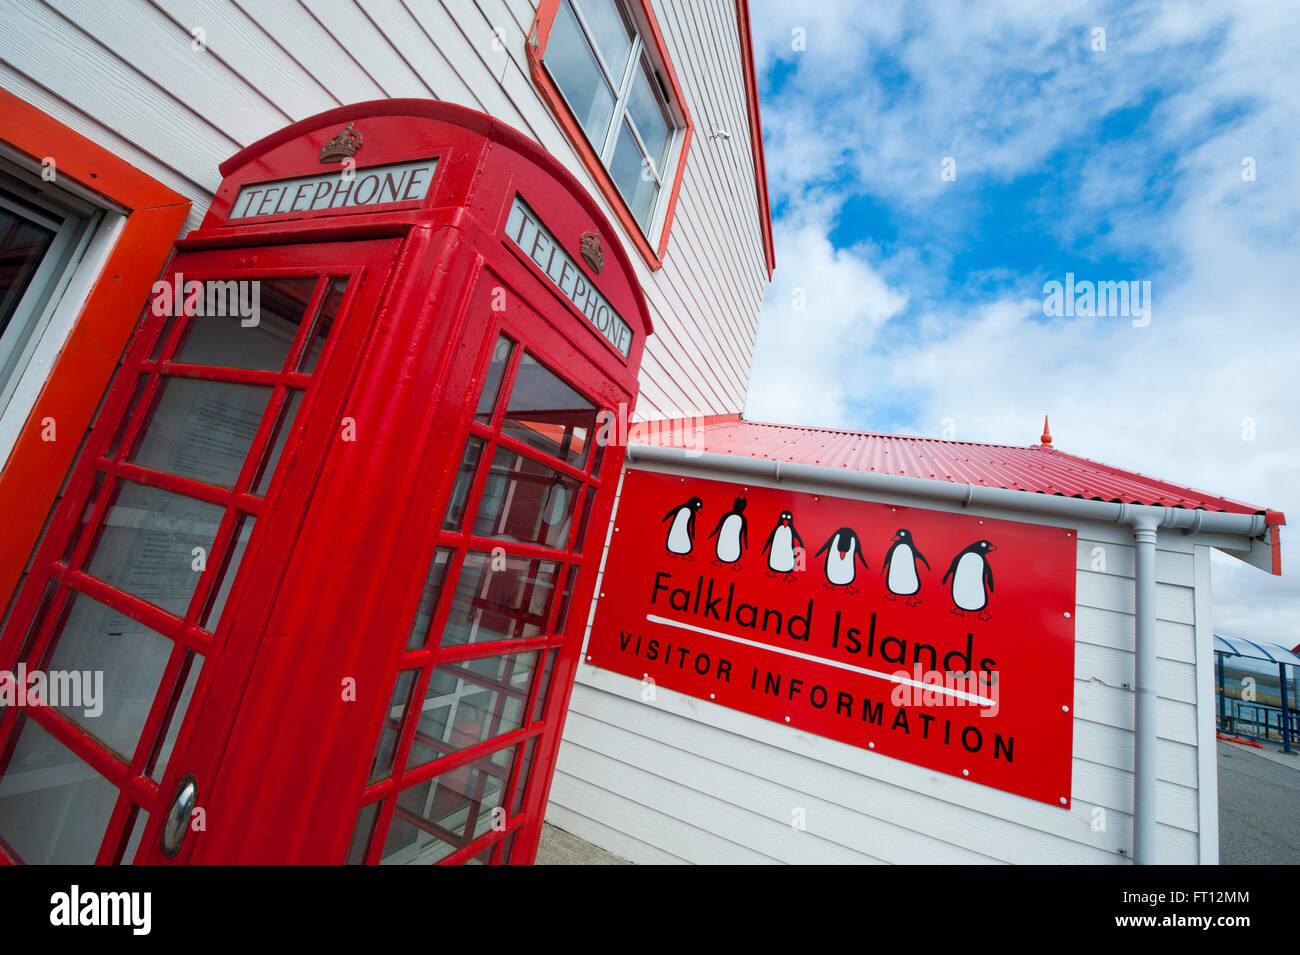 Traditionelle britische rote Telefonzelle außerhalb der Falkland-Inseln-Besucherinformation Gebäude, Stanley, East Falkland, Falkland-Inseln, British Overseas Territory, Südamerika Stockfoto